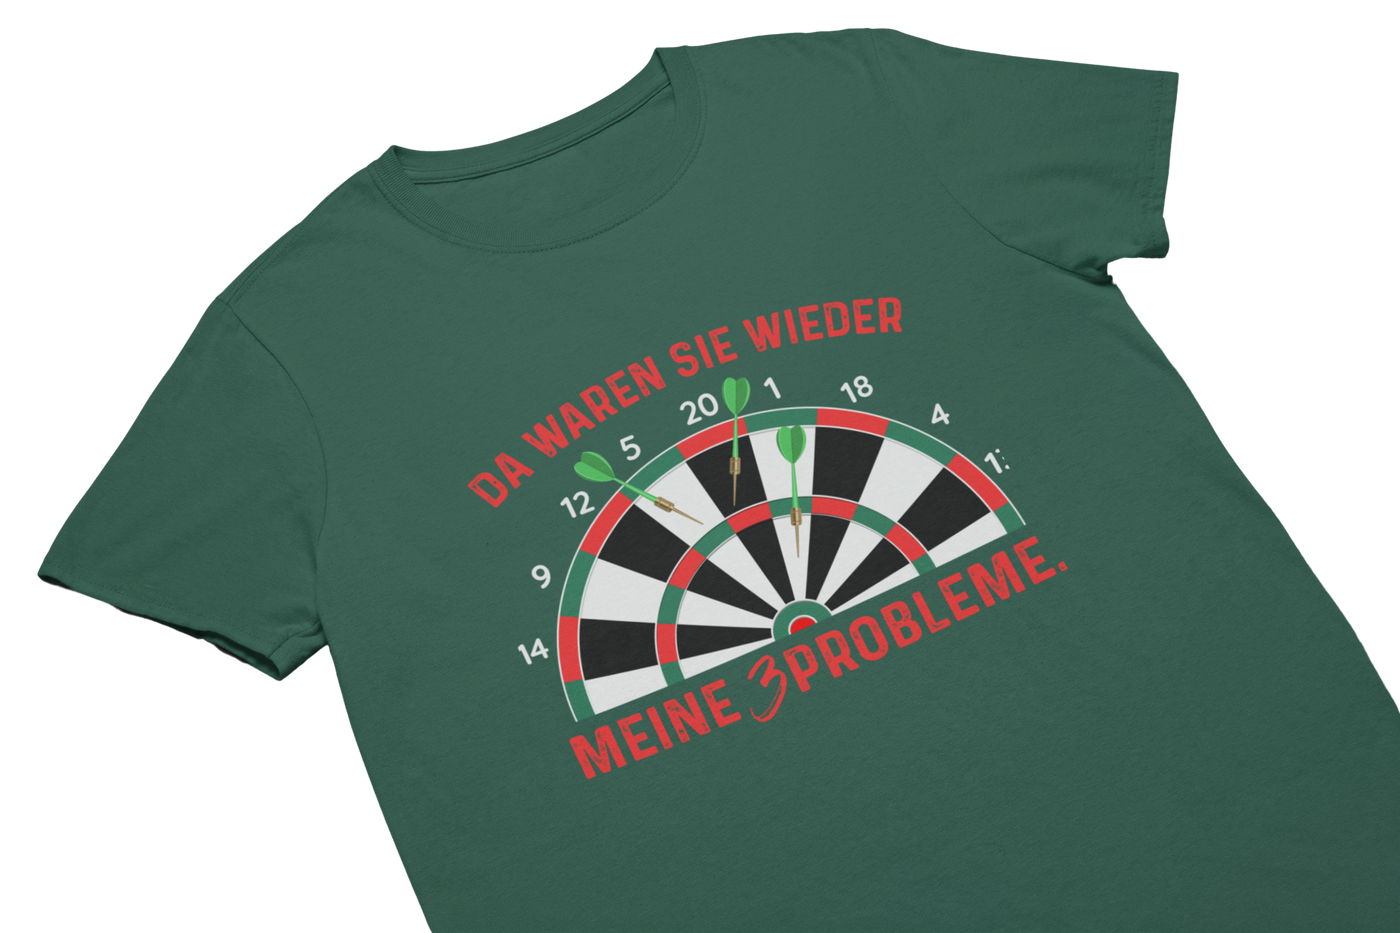 MEINE 3 PROBLEME - T-Shirt Gruen